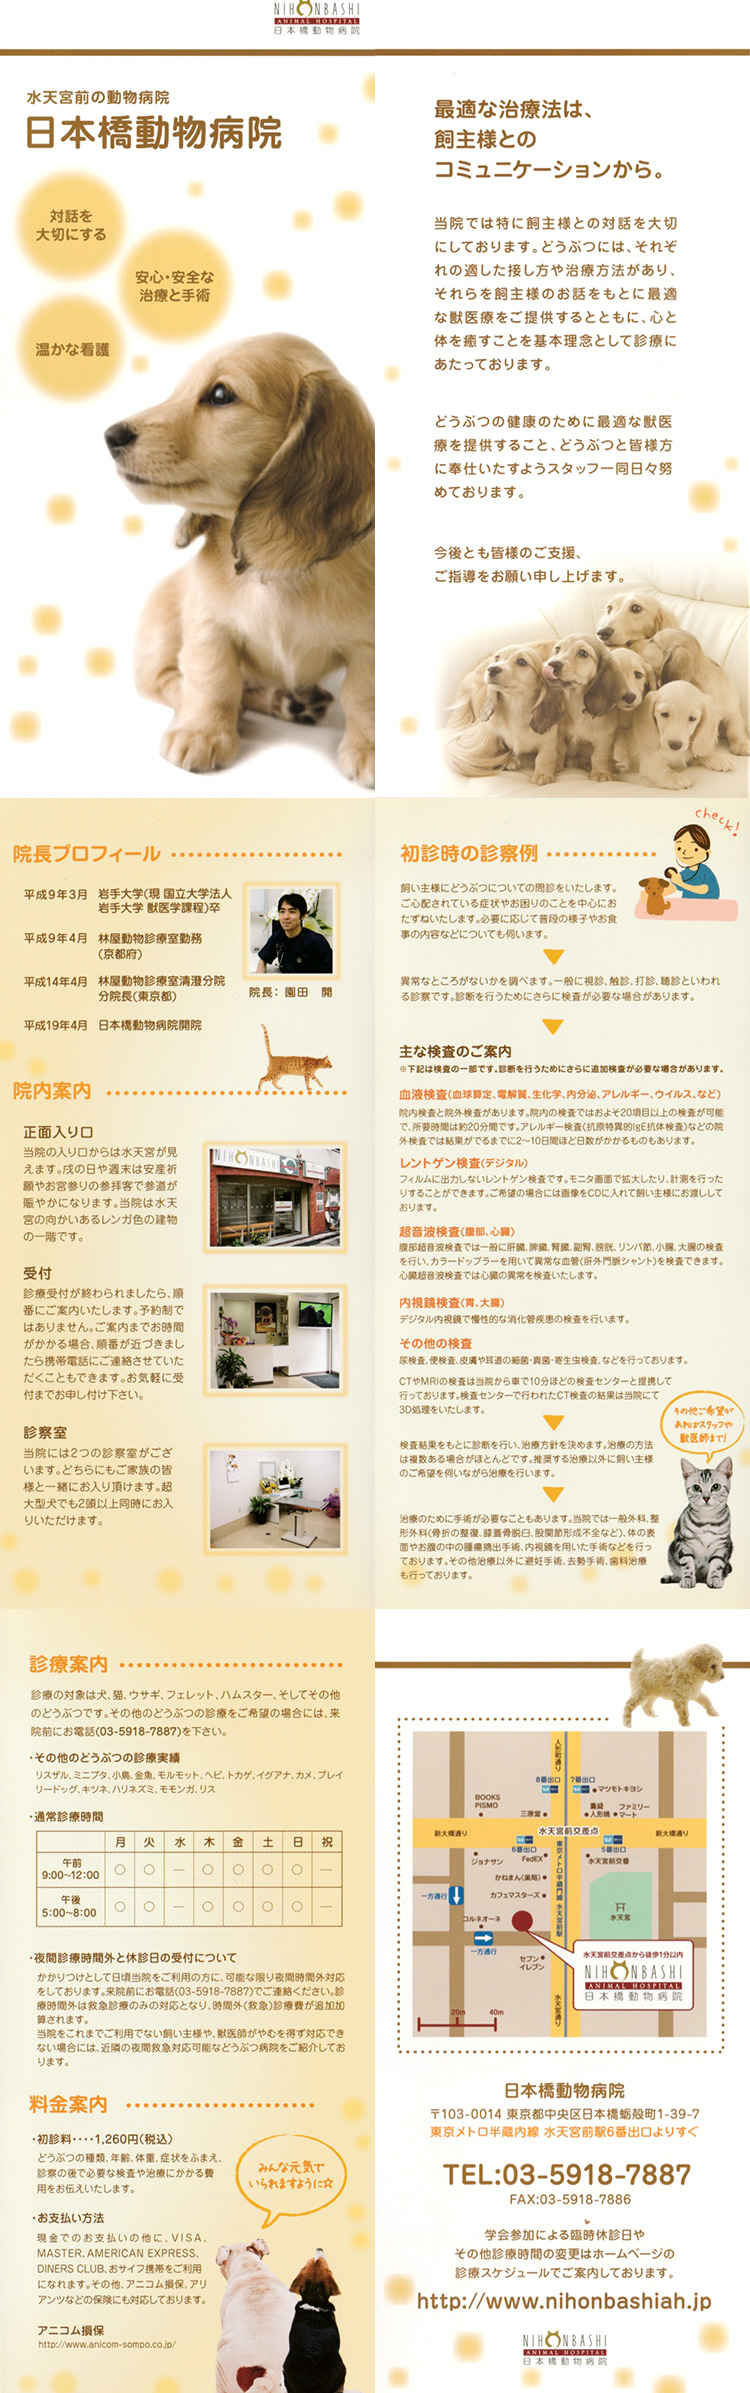 日本橋動物病院のお知らせ内容